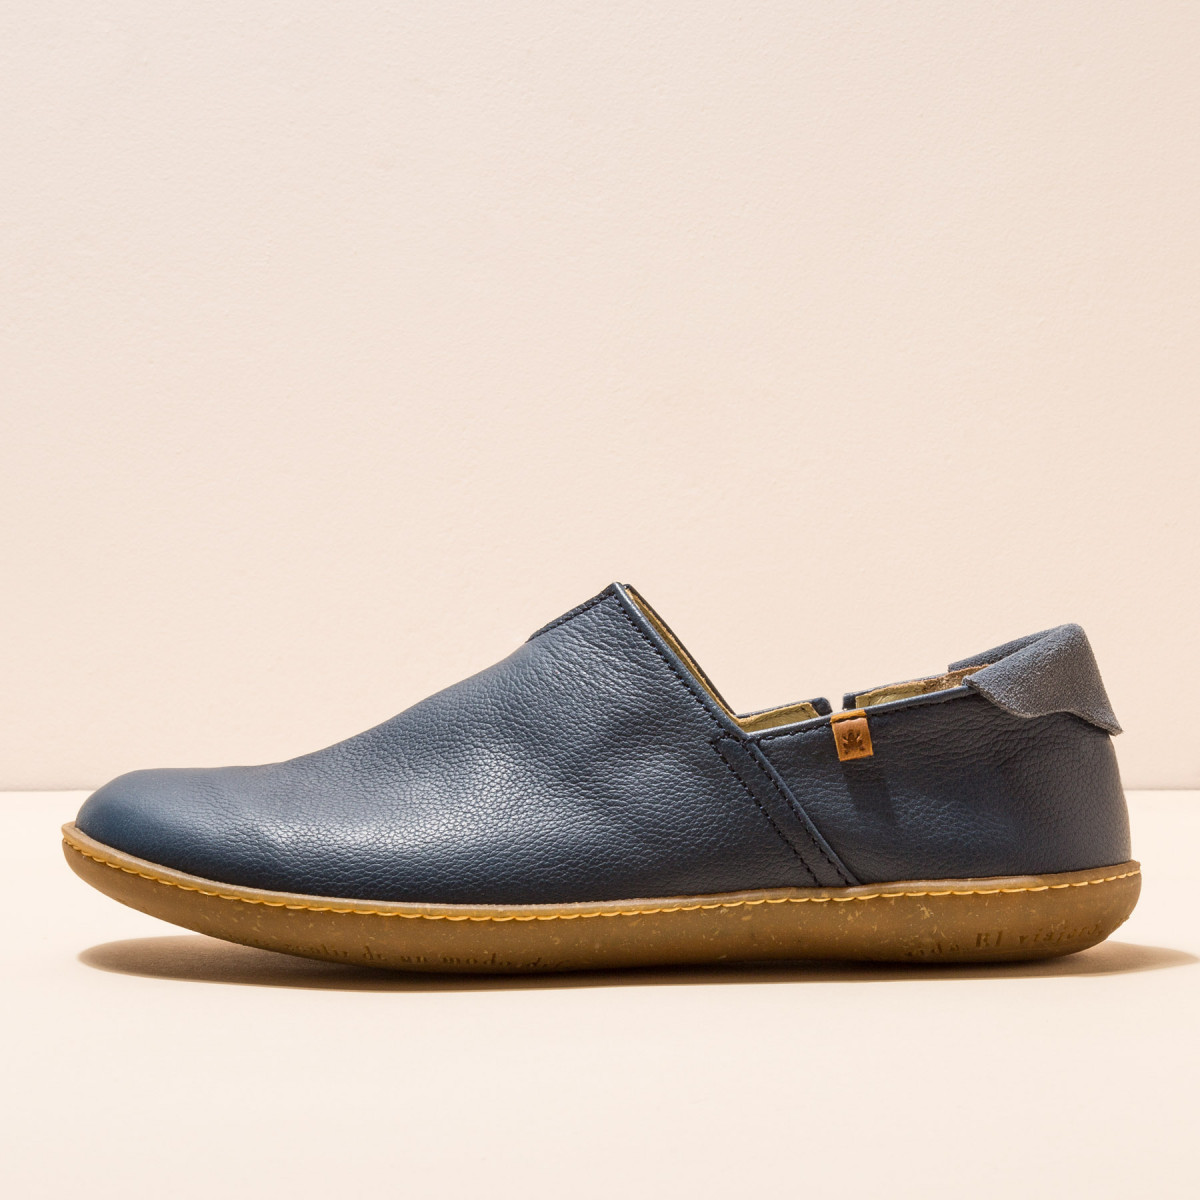 Chaussures confort en cuir naturel et semelles recyclées - Bleu Marine - El naturalista